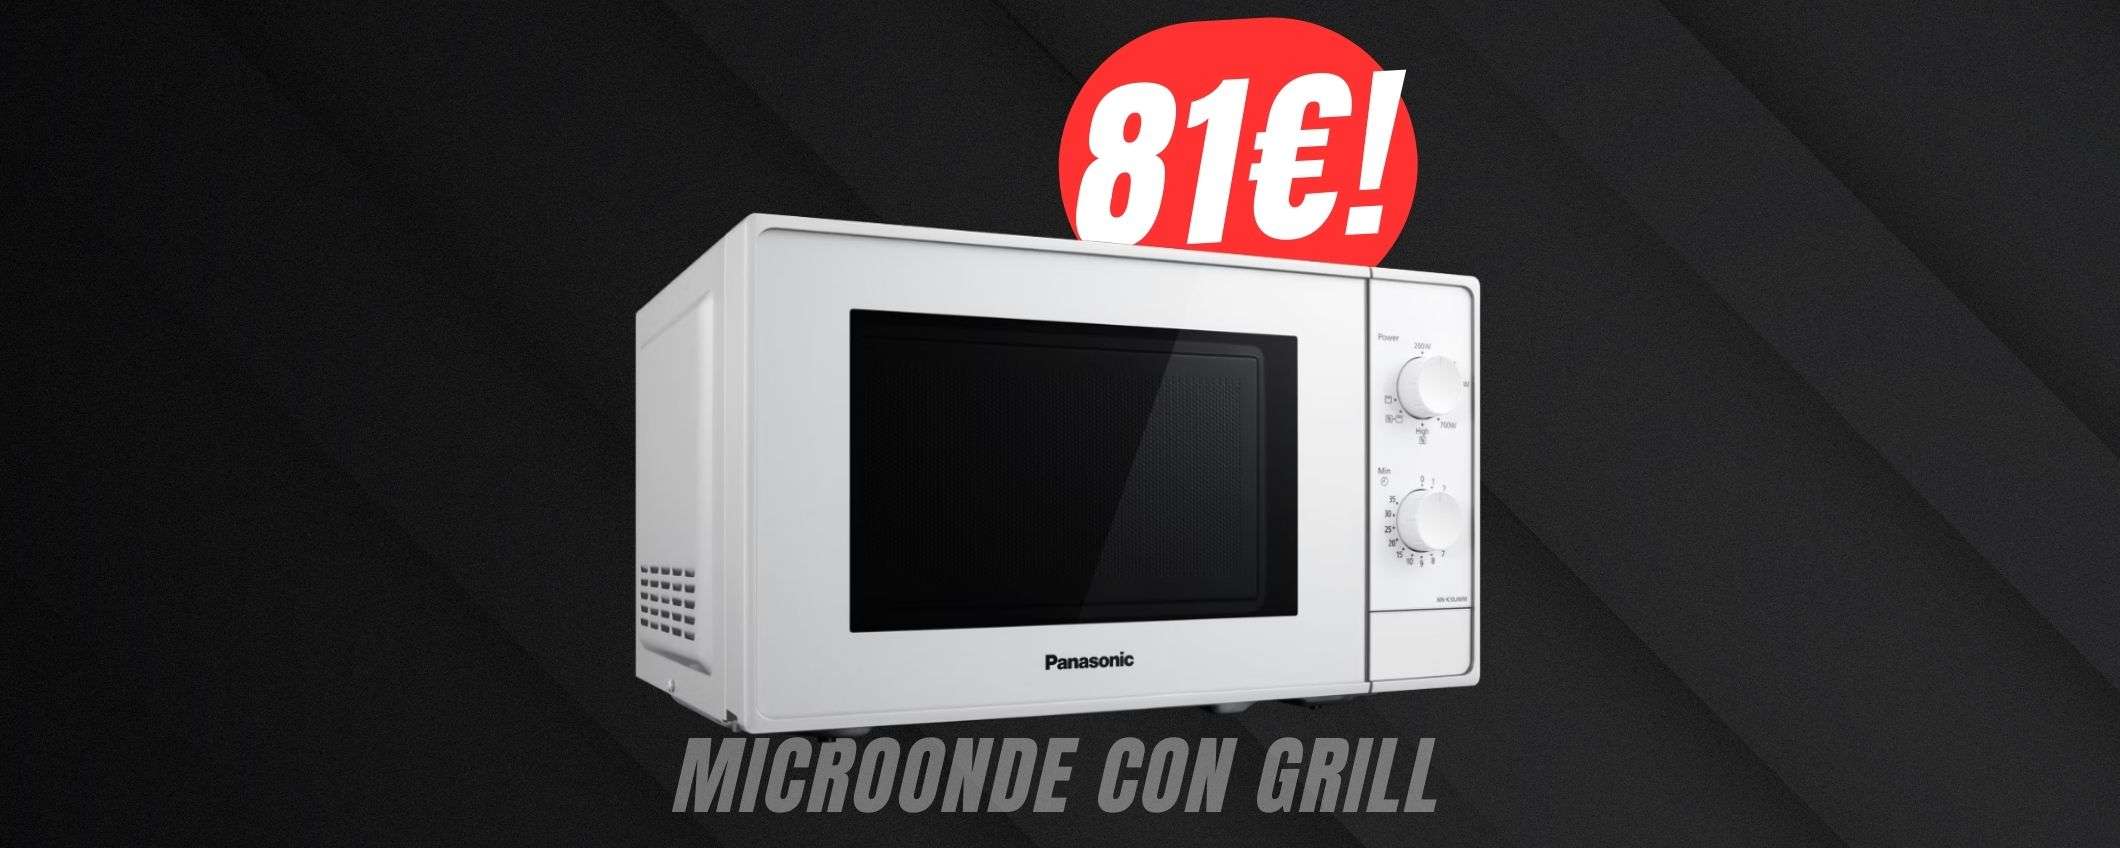 Solo 81€ per il MICROONDE (con GRILL) di Panasonic!